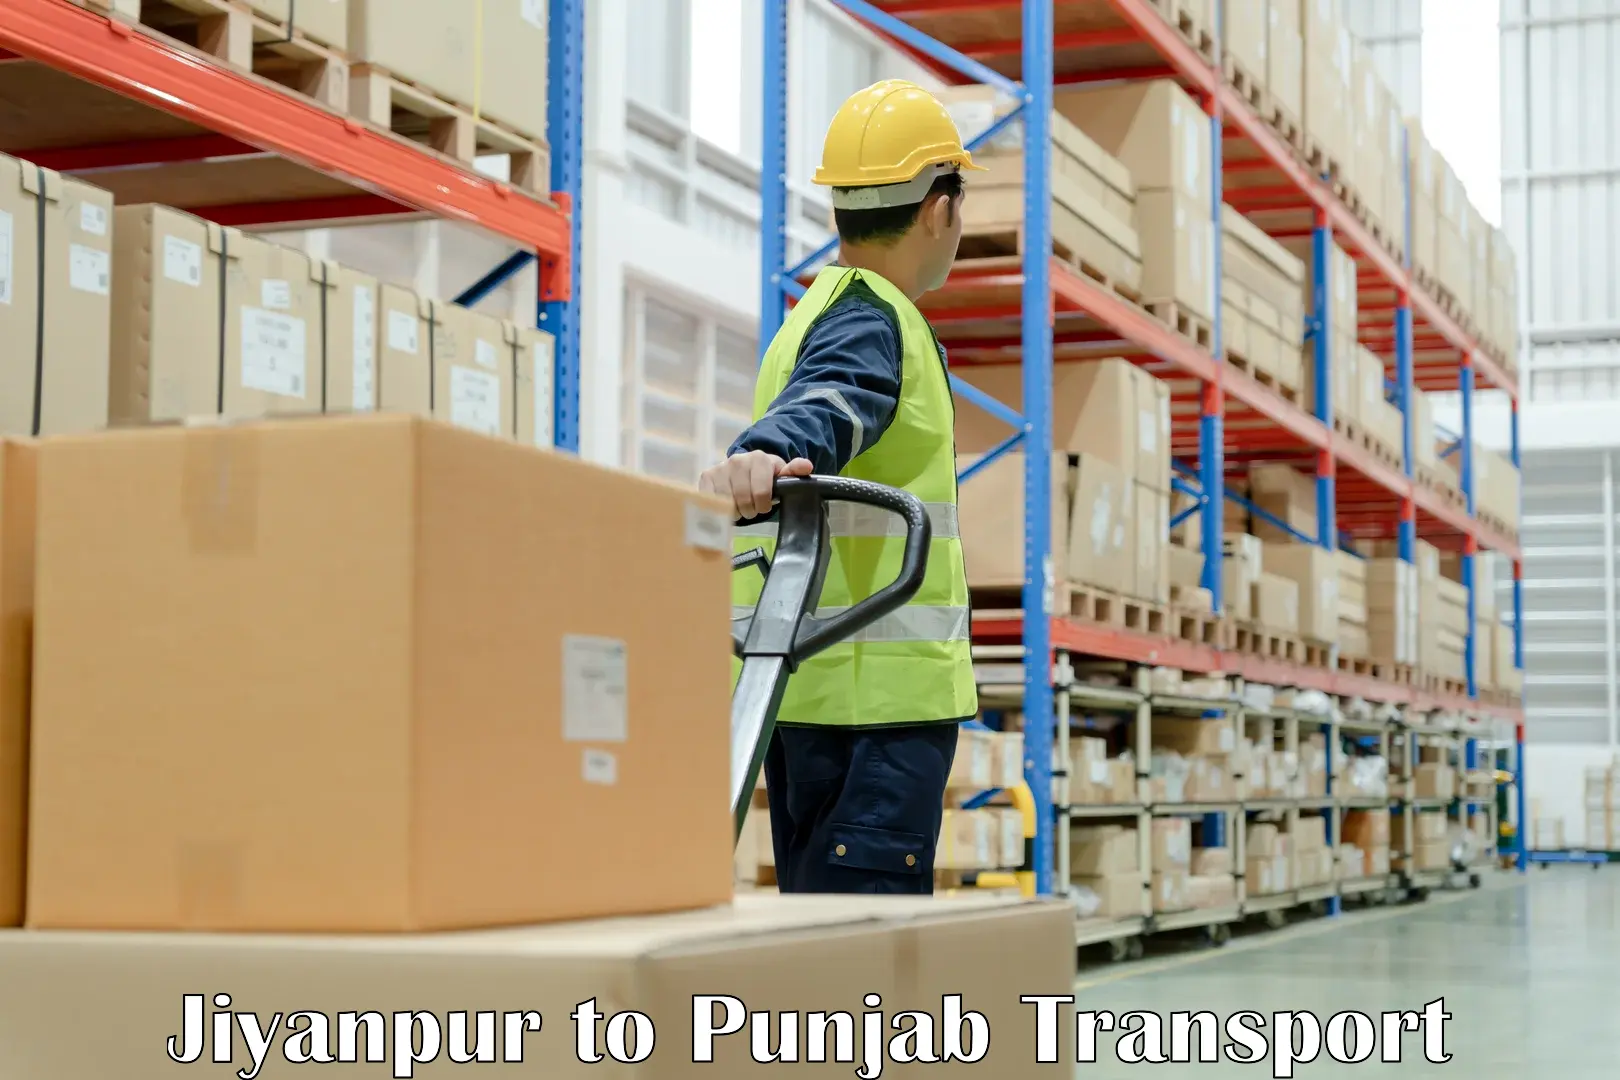 Transportation services Jiyanpur to Punjab